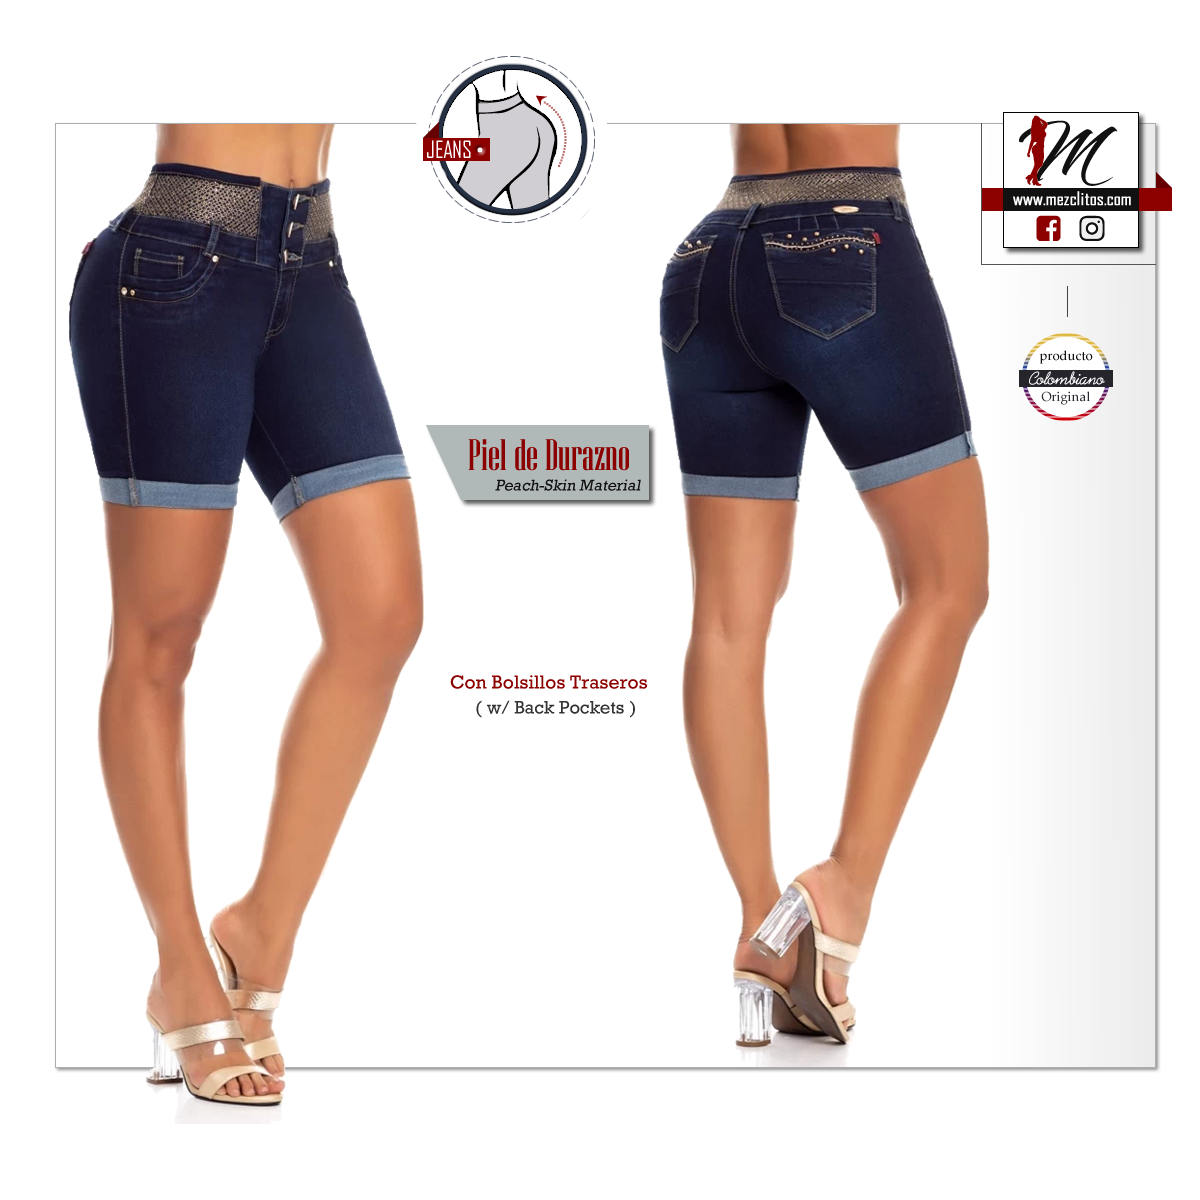 Zagi Jeans - 100% Colombiano – Mezclitos